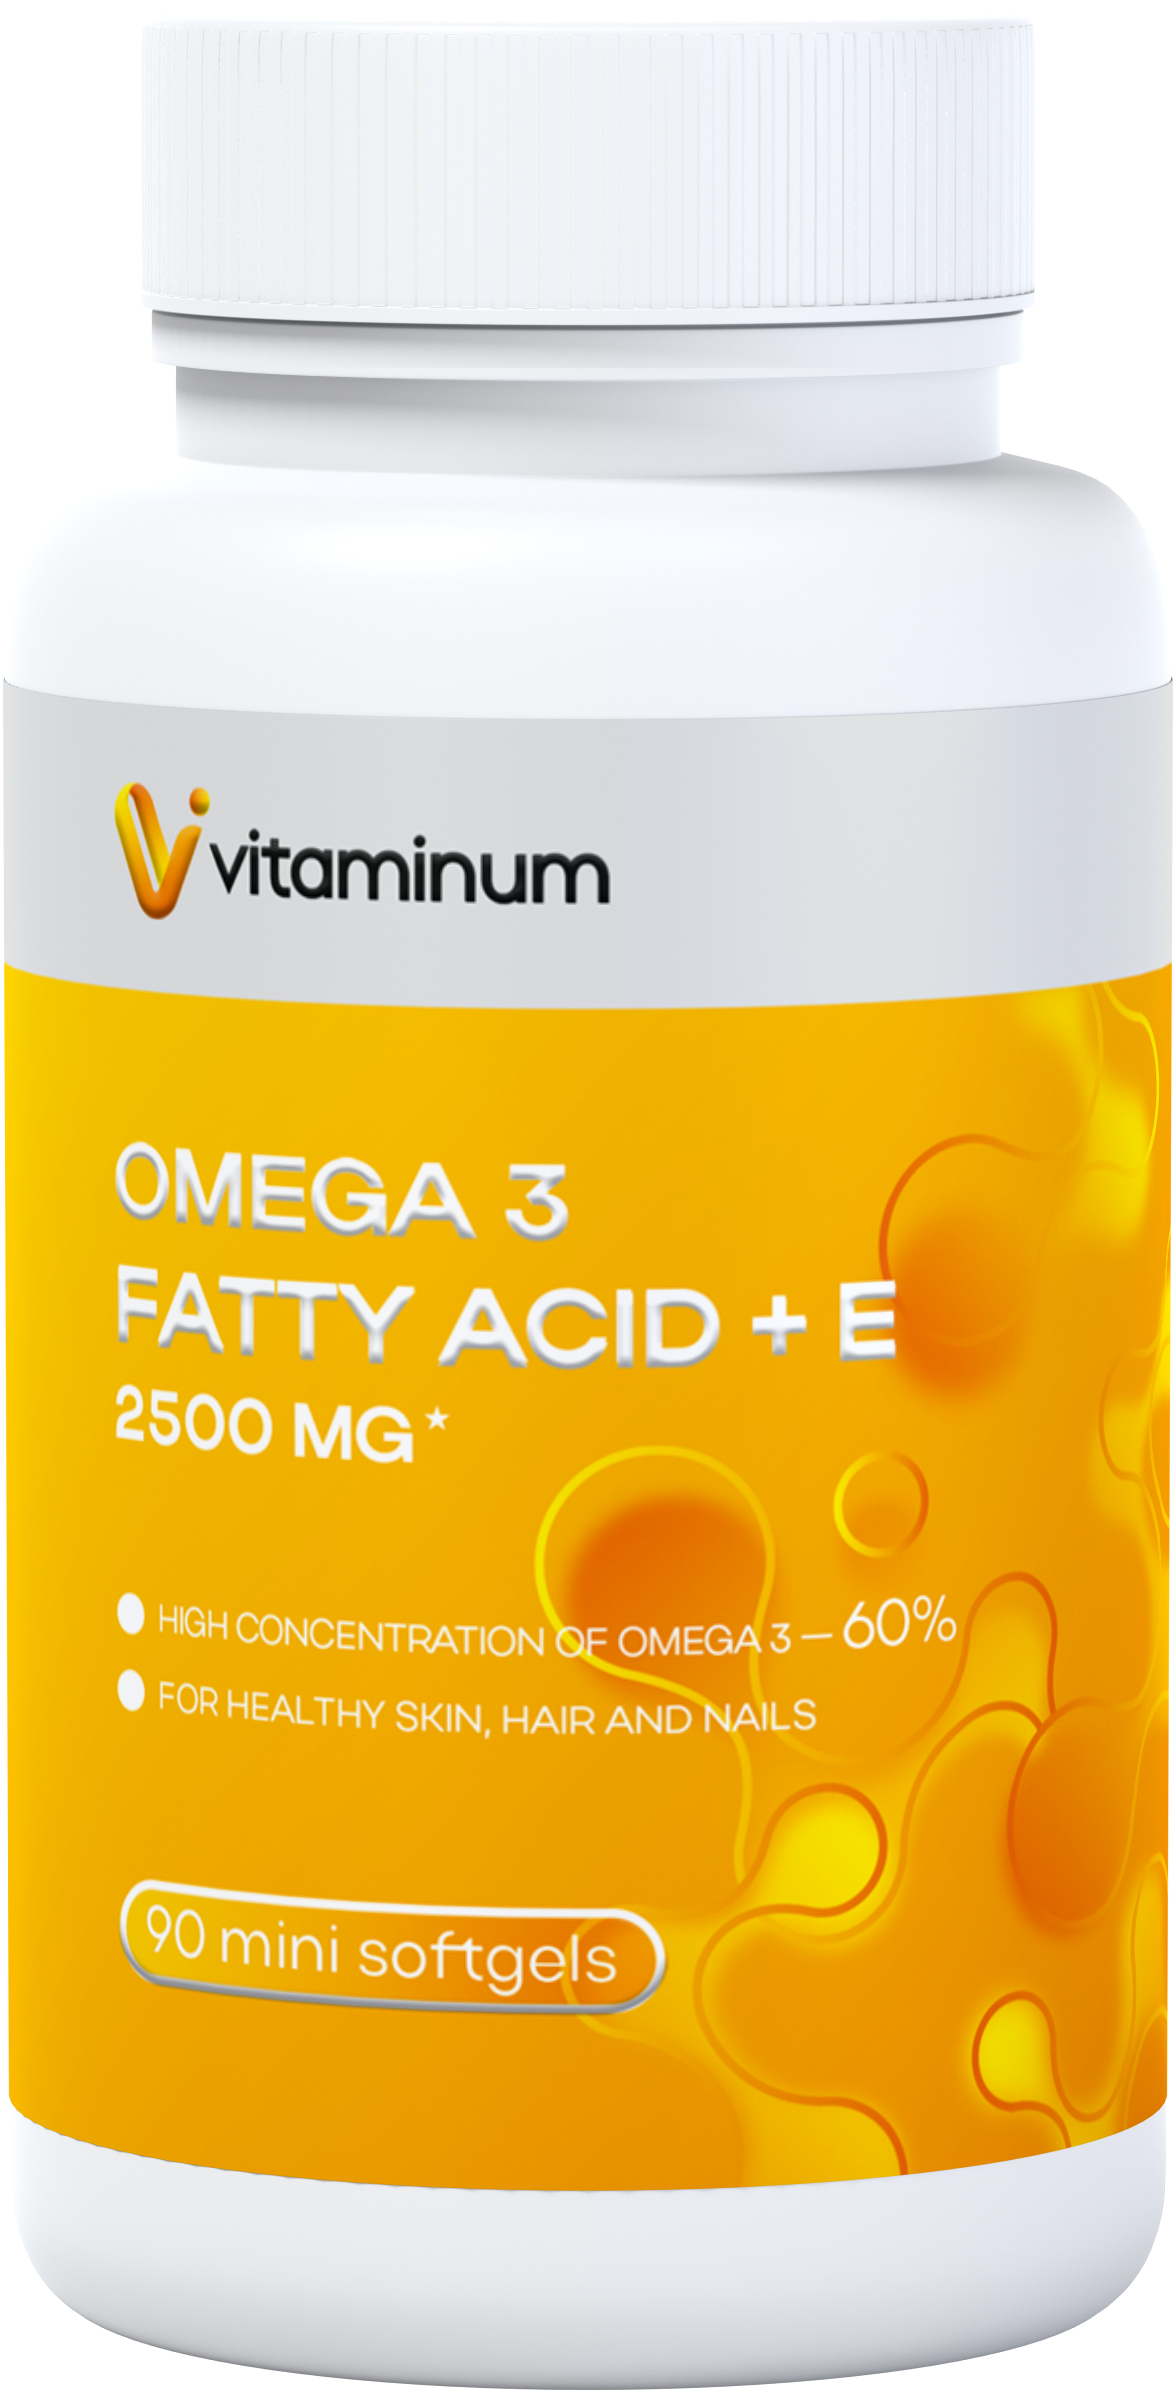  Vitaminum ОМЕГА 3 60% + витамин Е (2500 MG*) 90 капсул 700 мг   в Белореченске